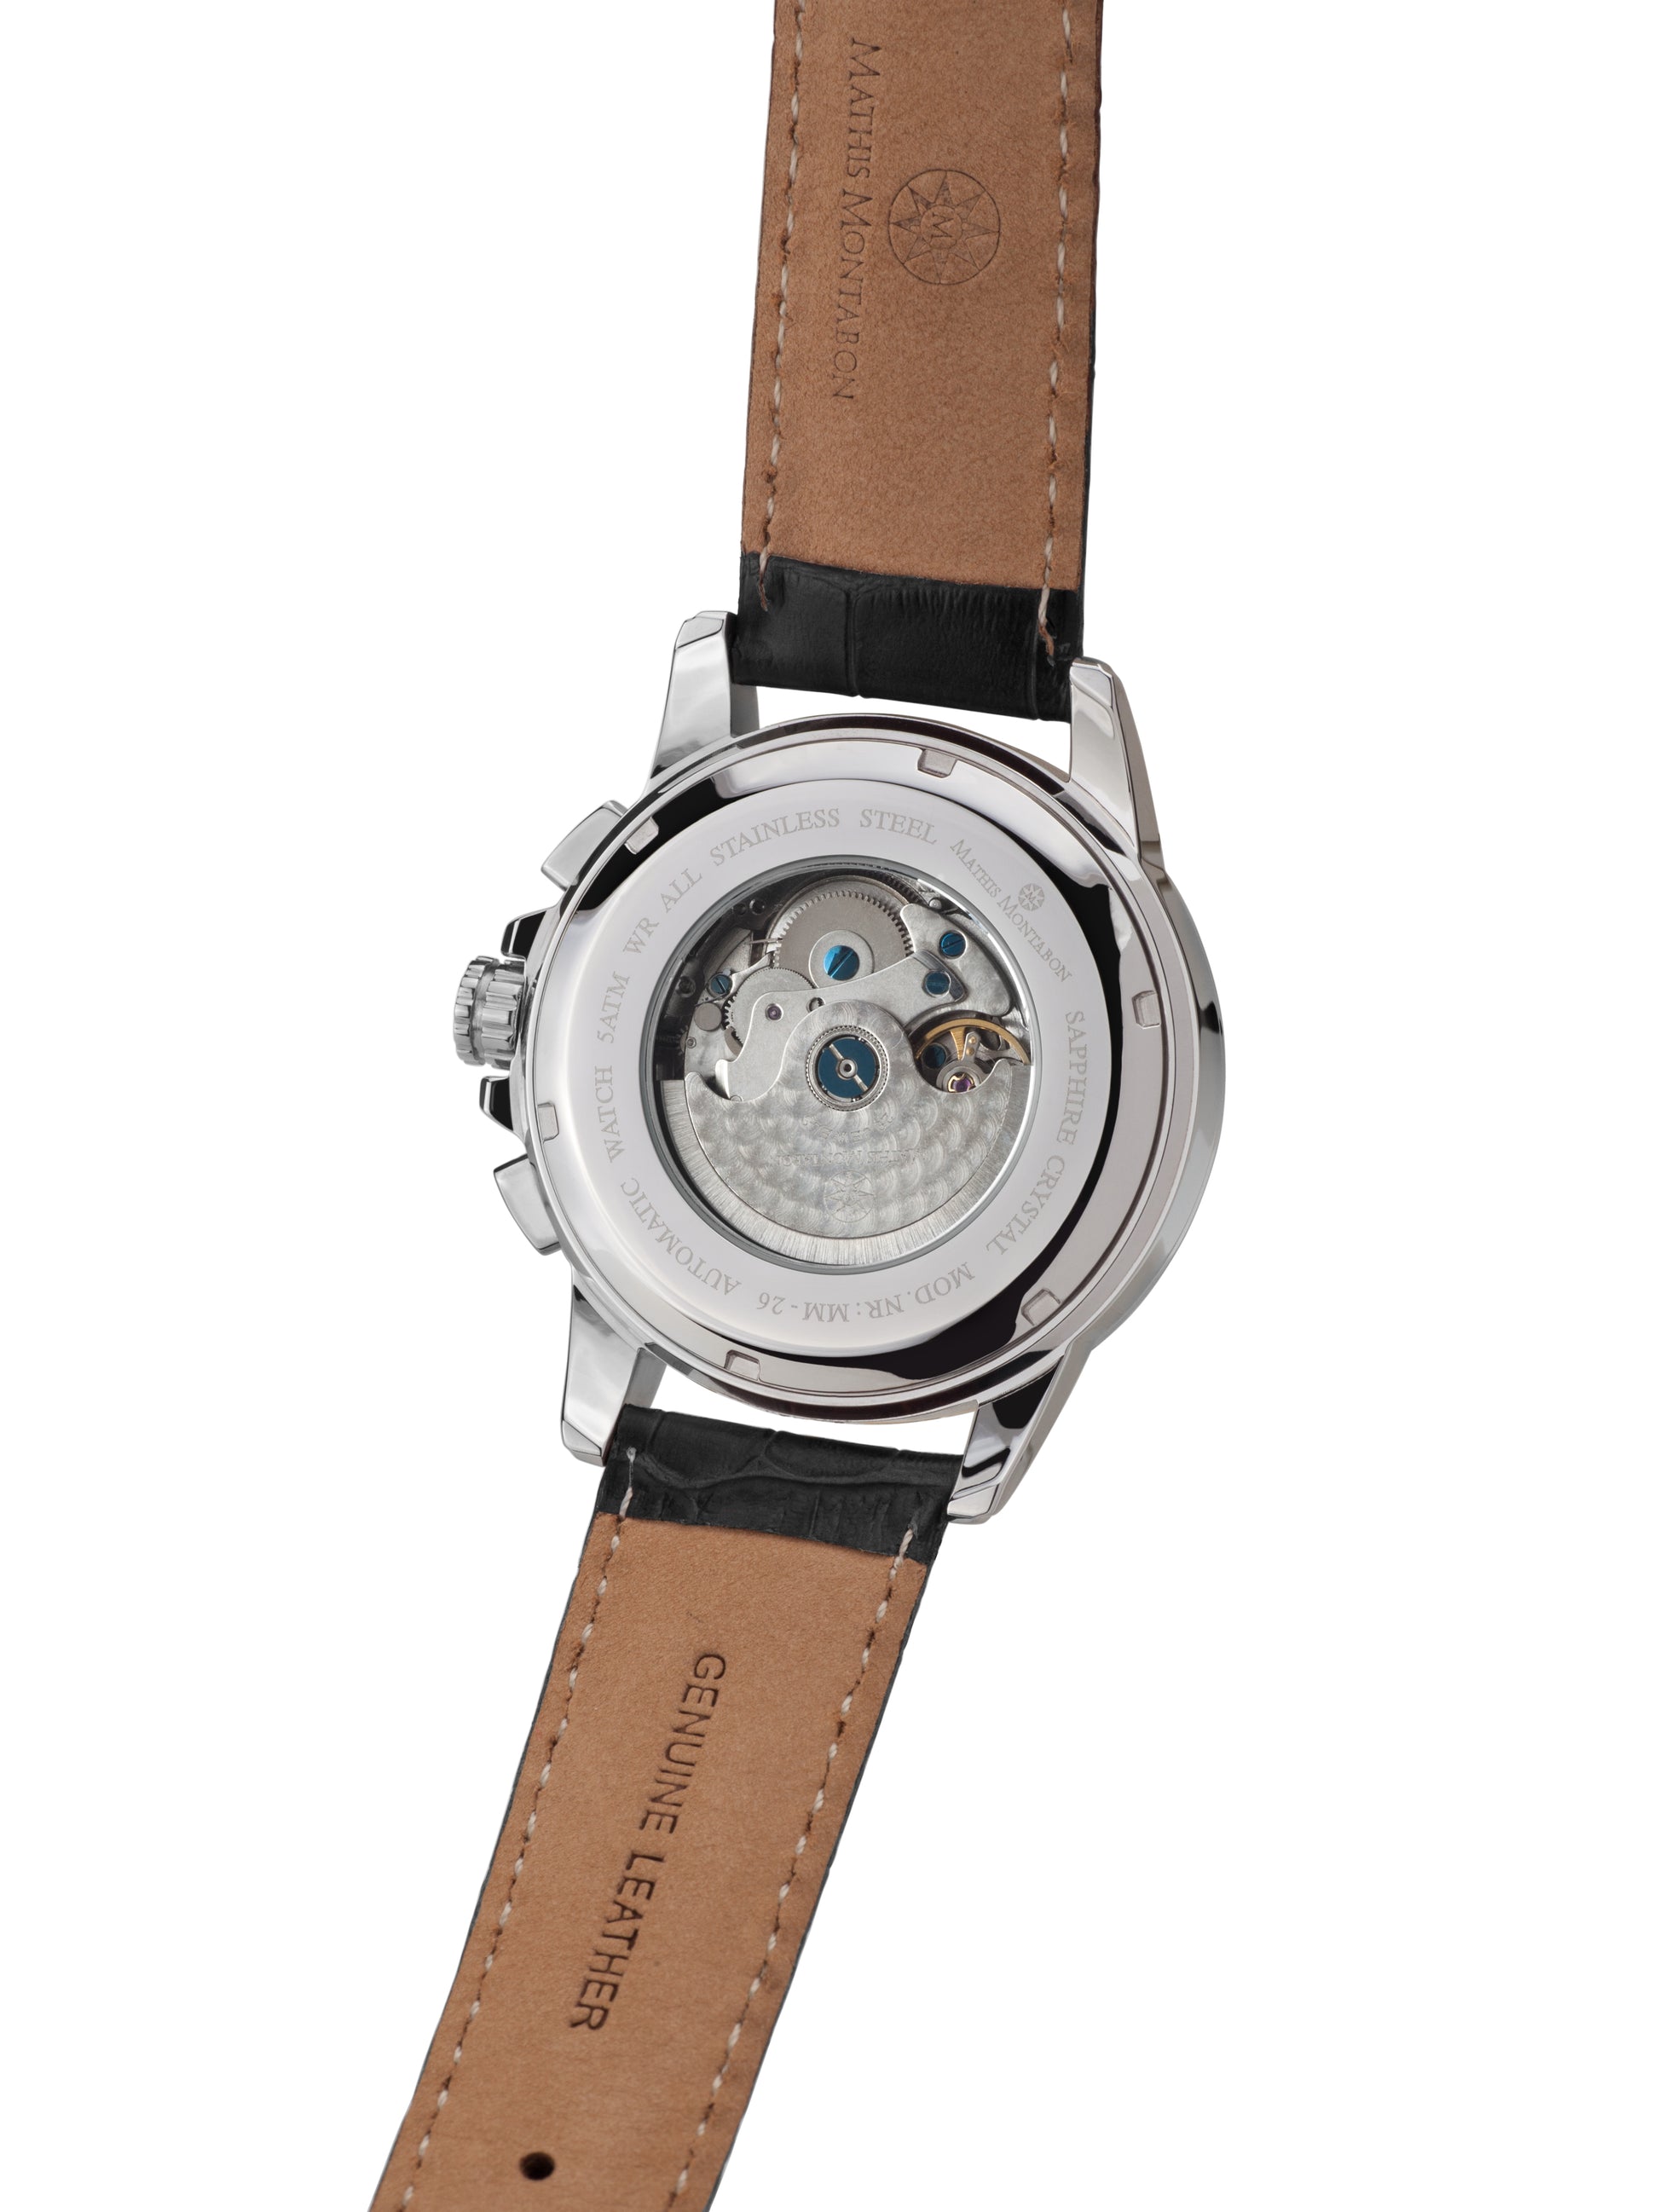 Automatic watches — Aerotime — Mathis Montabon — schwarz